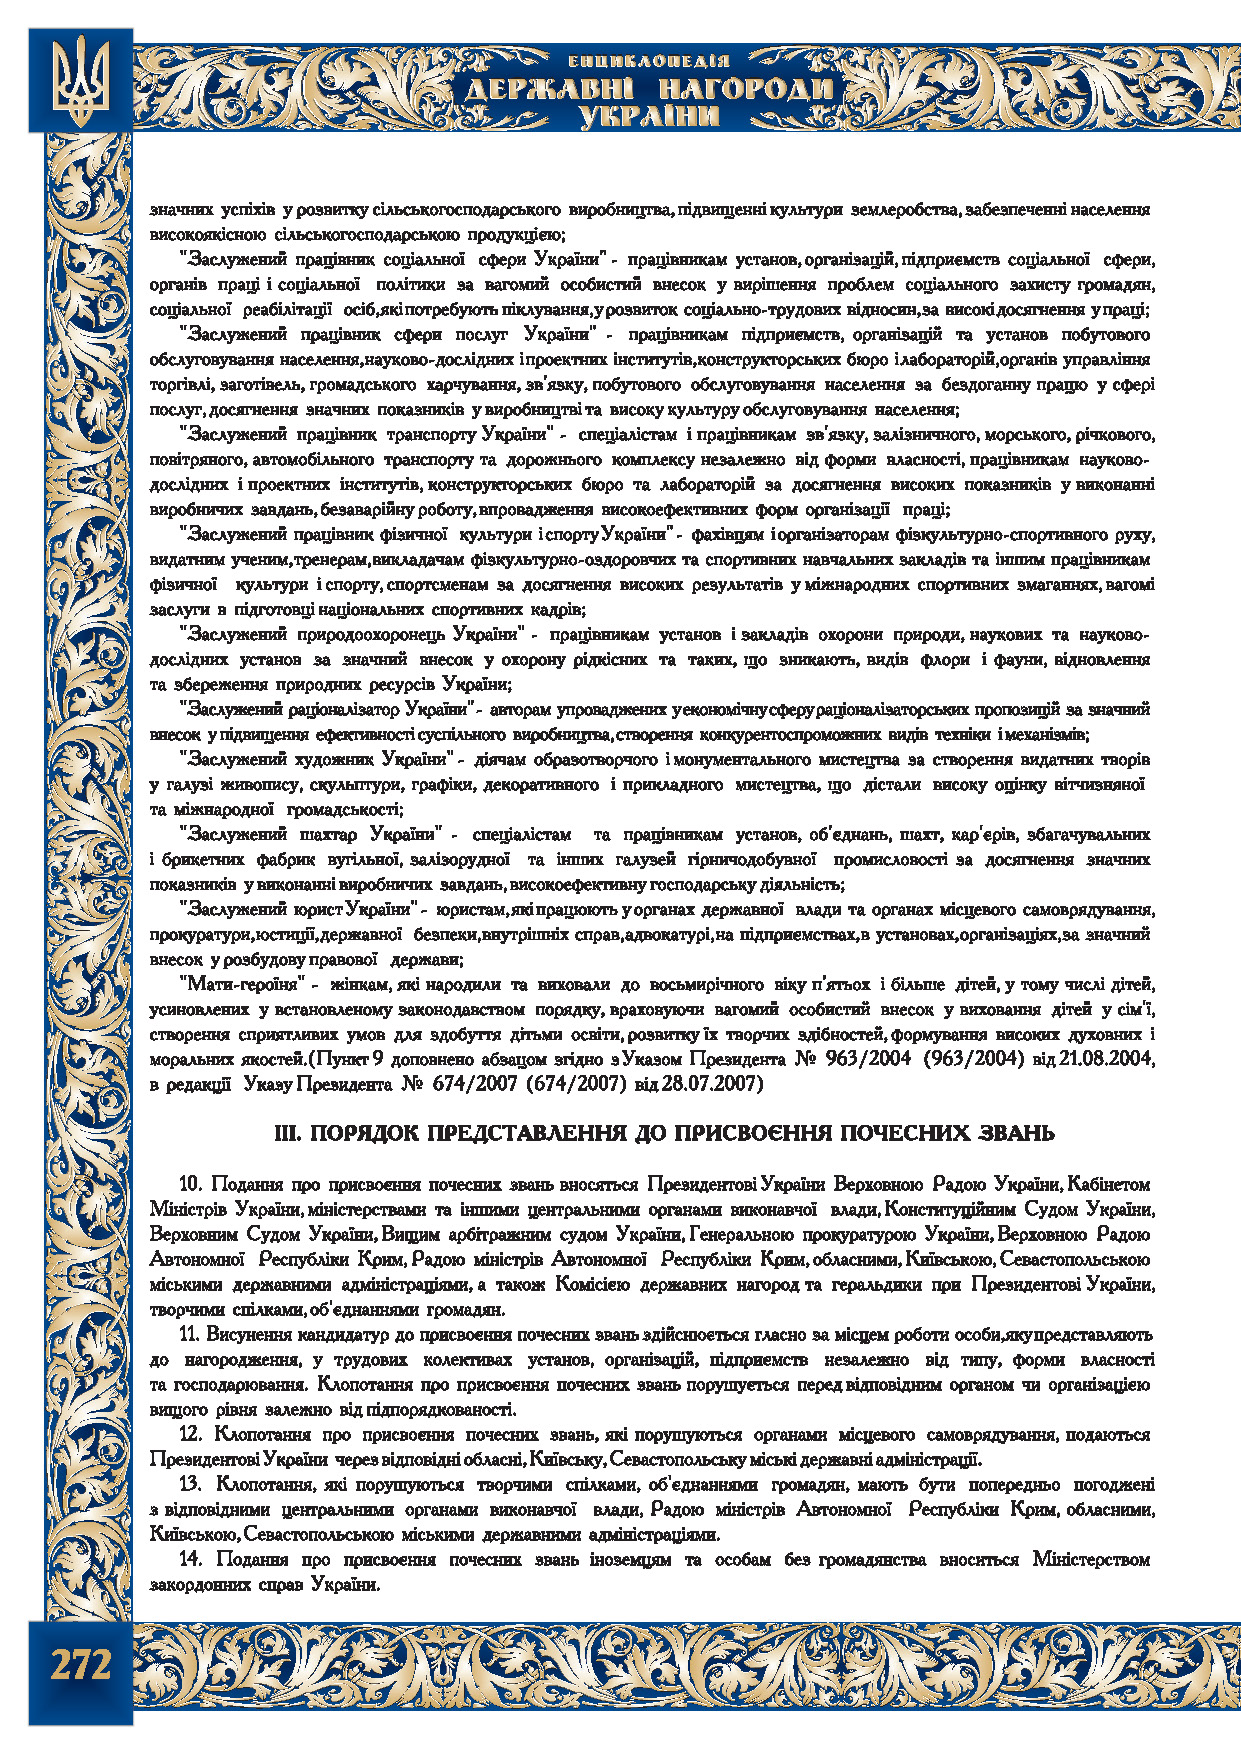 Положення про почесні звання України